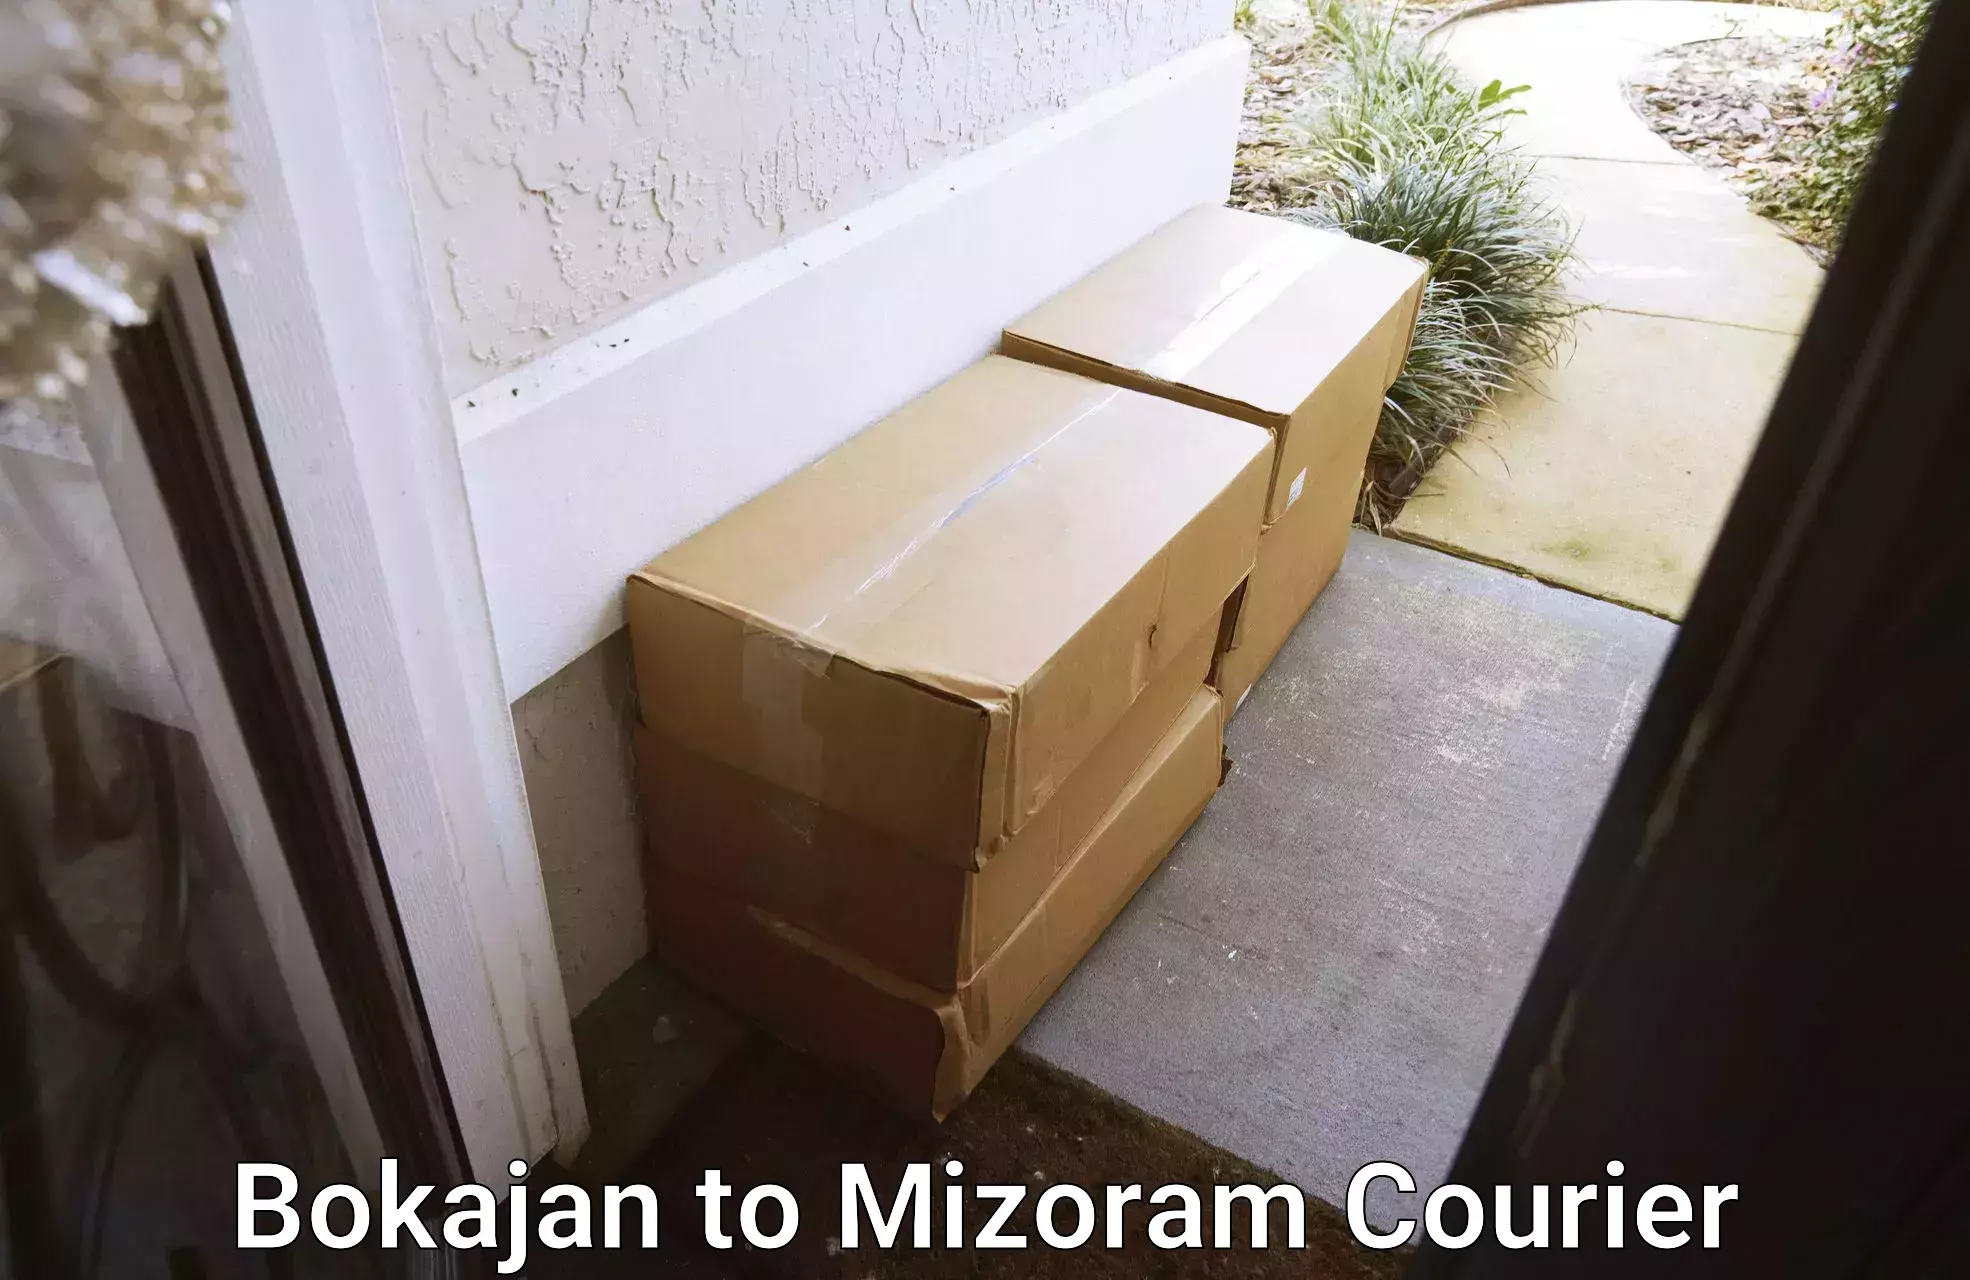 Express delivery solutions in Bokajan to Mizoram